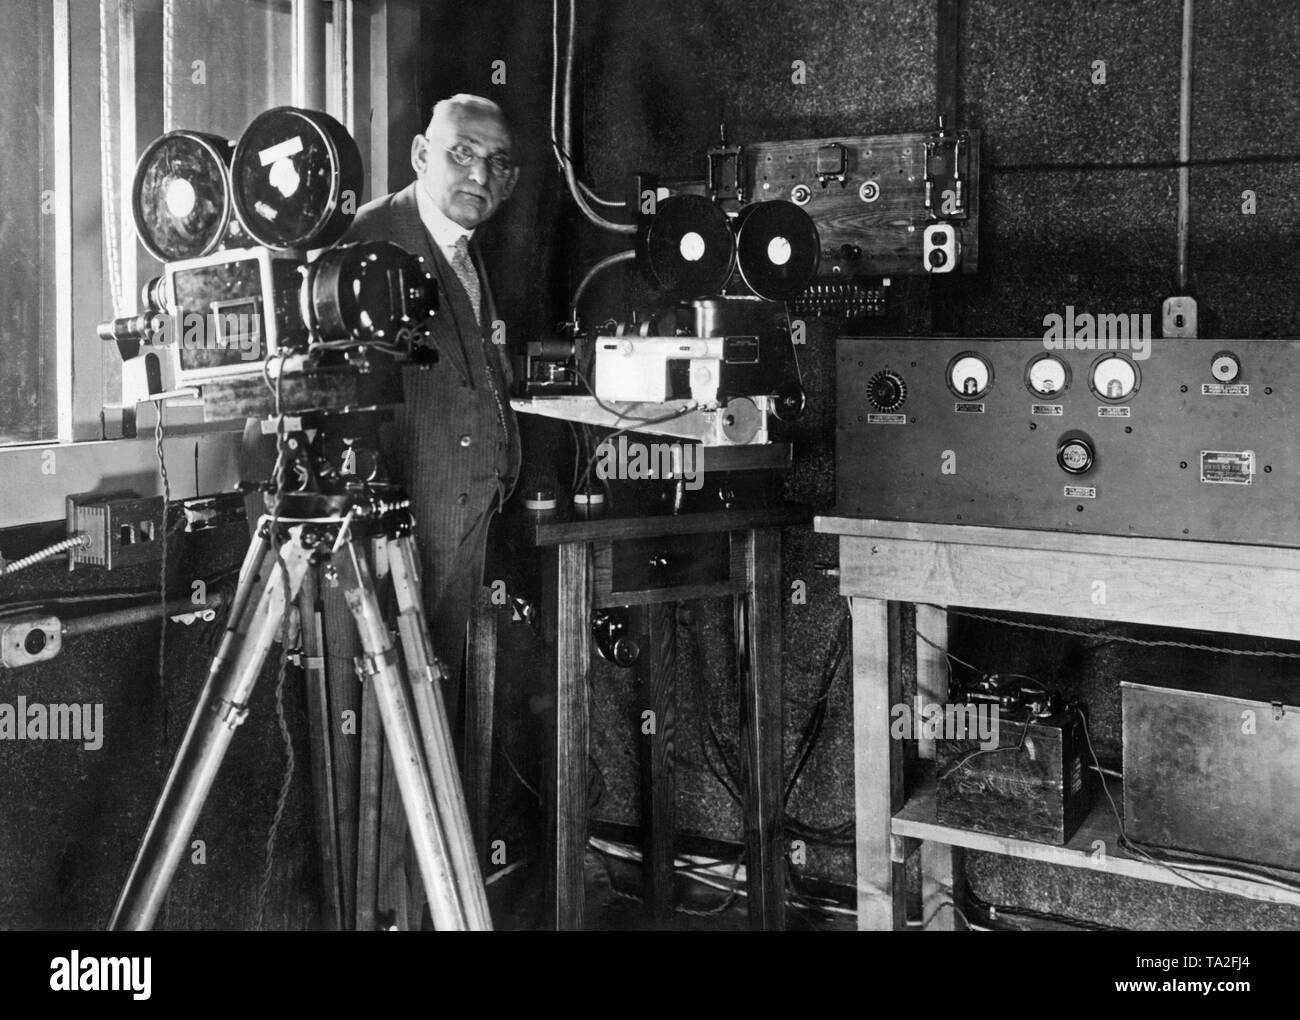 Dieses Foto zeigt ein Mitarbeiter von C.A. Hoxie mit einem photophon. Dieses Gerät sorgt für eine Gleichzeitigkeit von Bild und Ton. Auf der linken Seite, die Kamera und auf der rechten das Aufnahmegerät für Ton, beide sind mit synchronmotor ausgestattet. Stockfoto